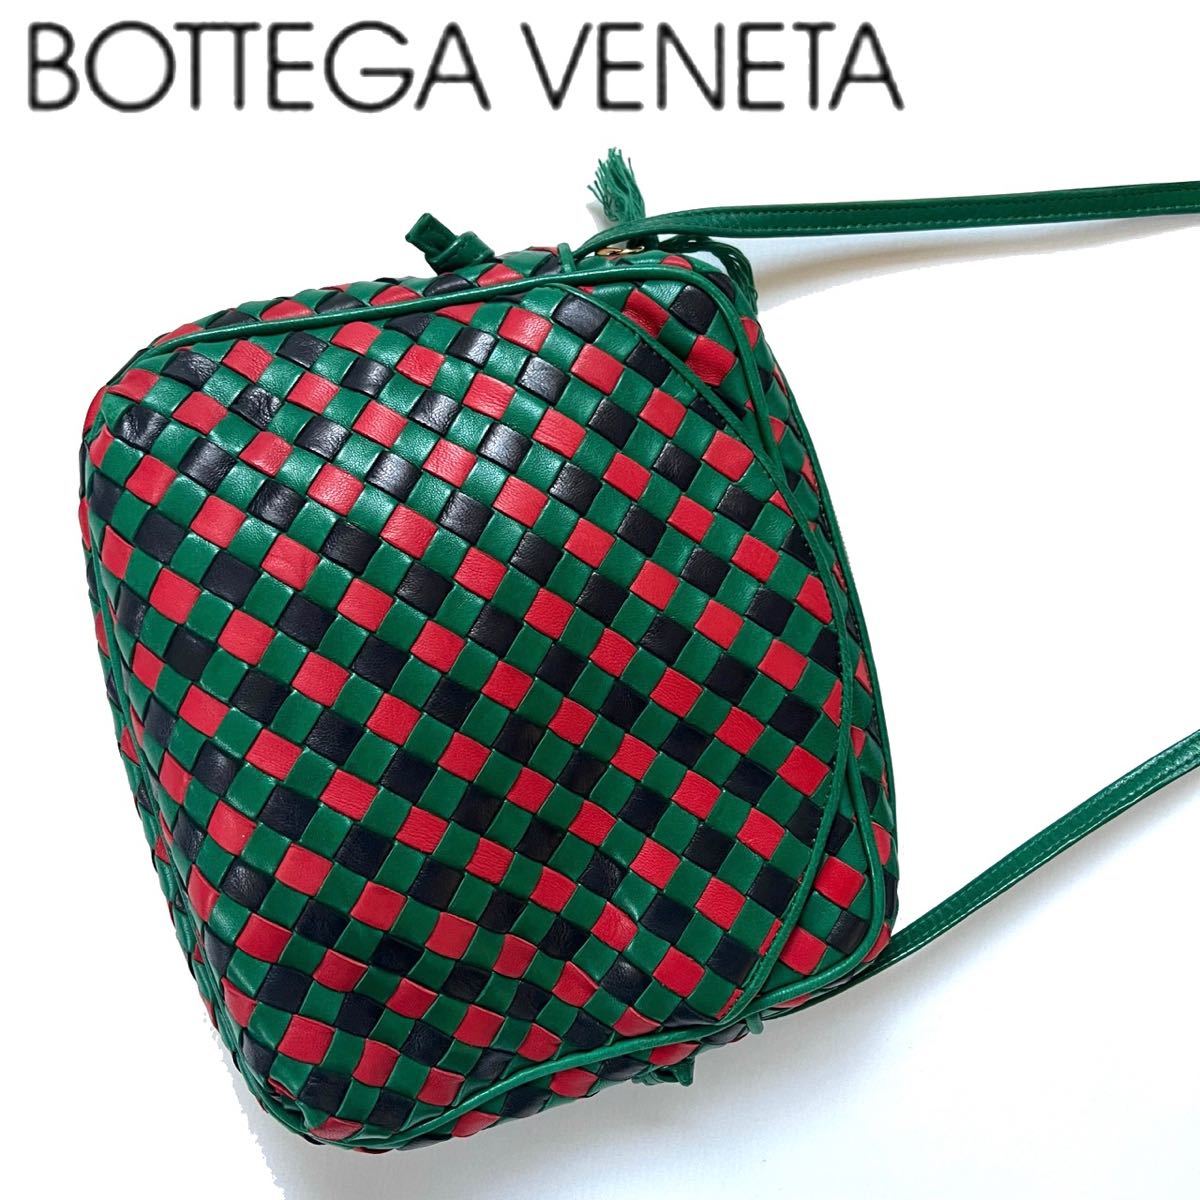 送料無料】BottegaVeneta ボッテガヴェネタ イントレチャート ショルダーバッグ レザー 本革 ポシェット 斜め掛け 緑 赤 鞄 